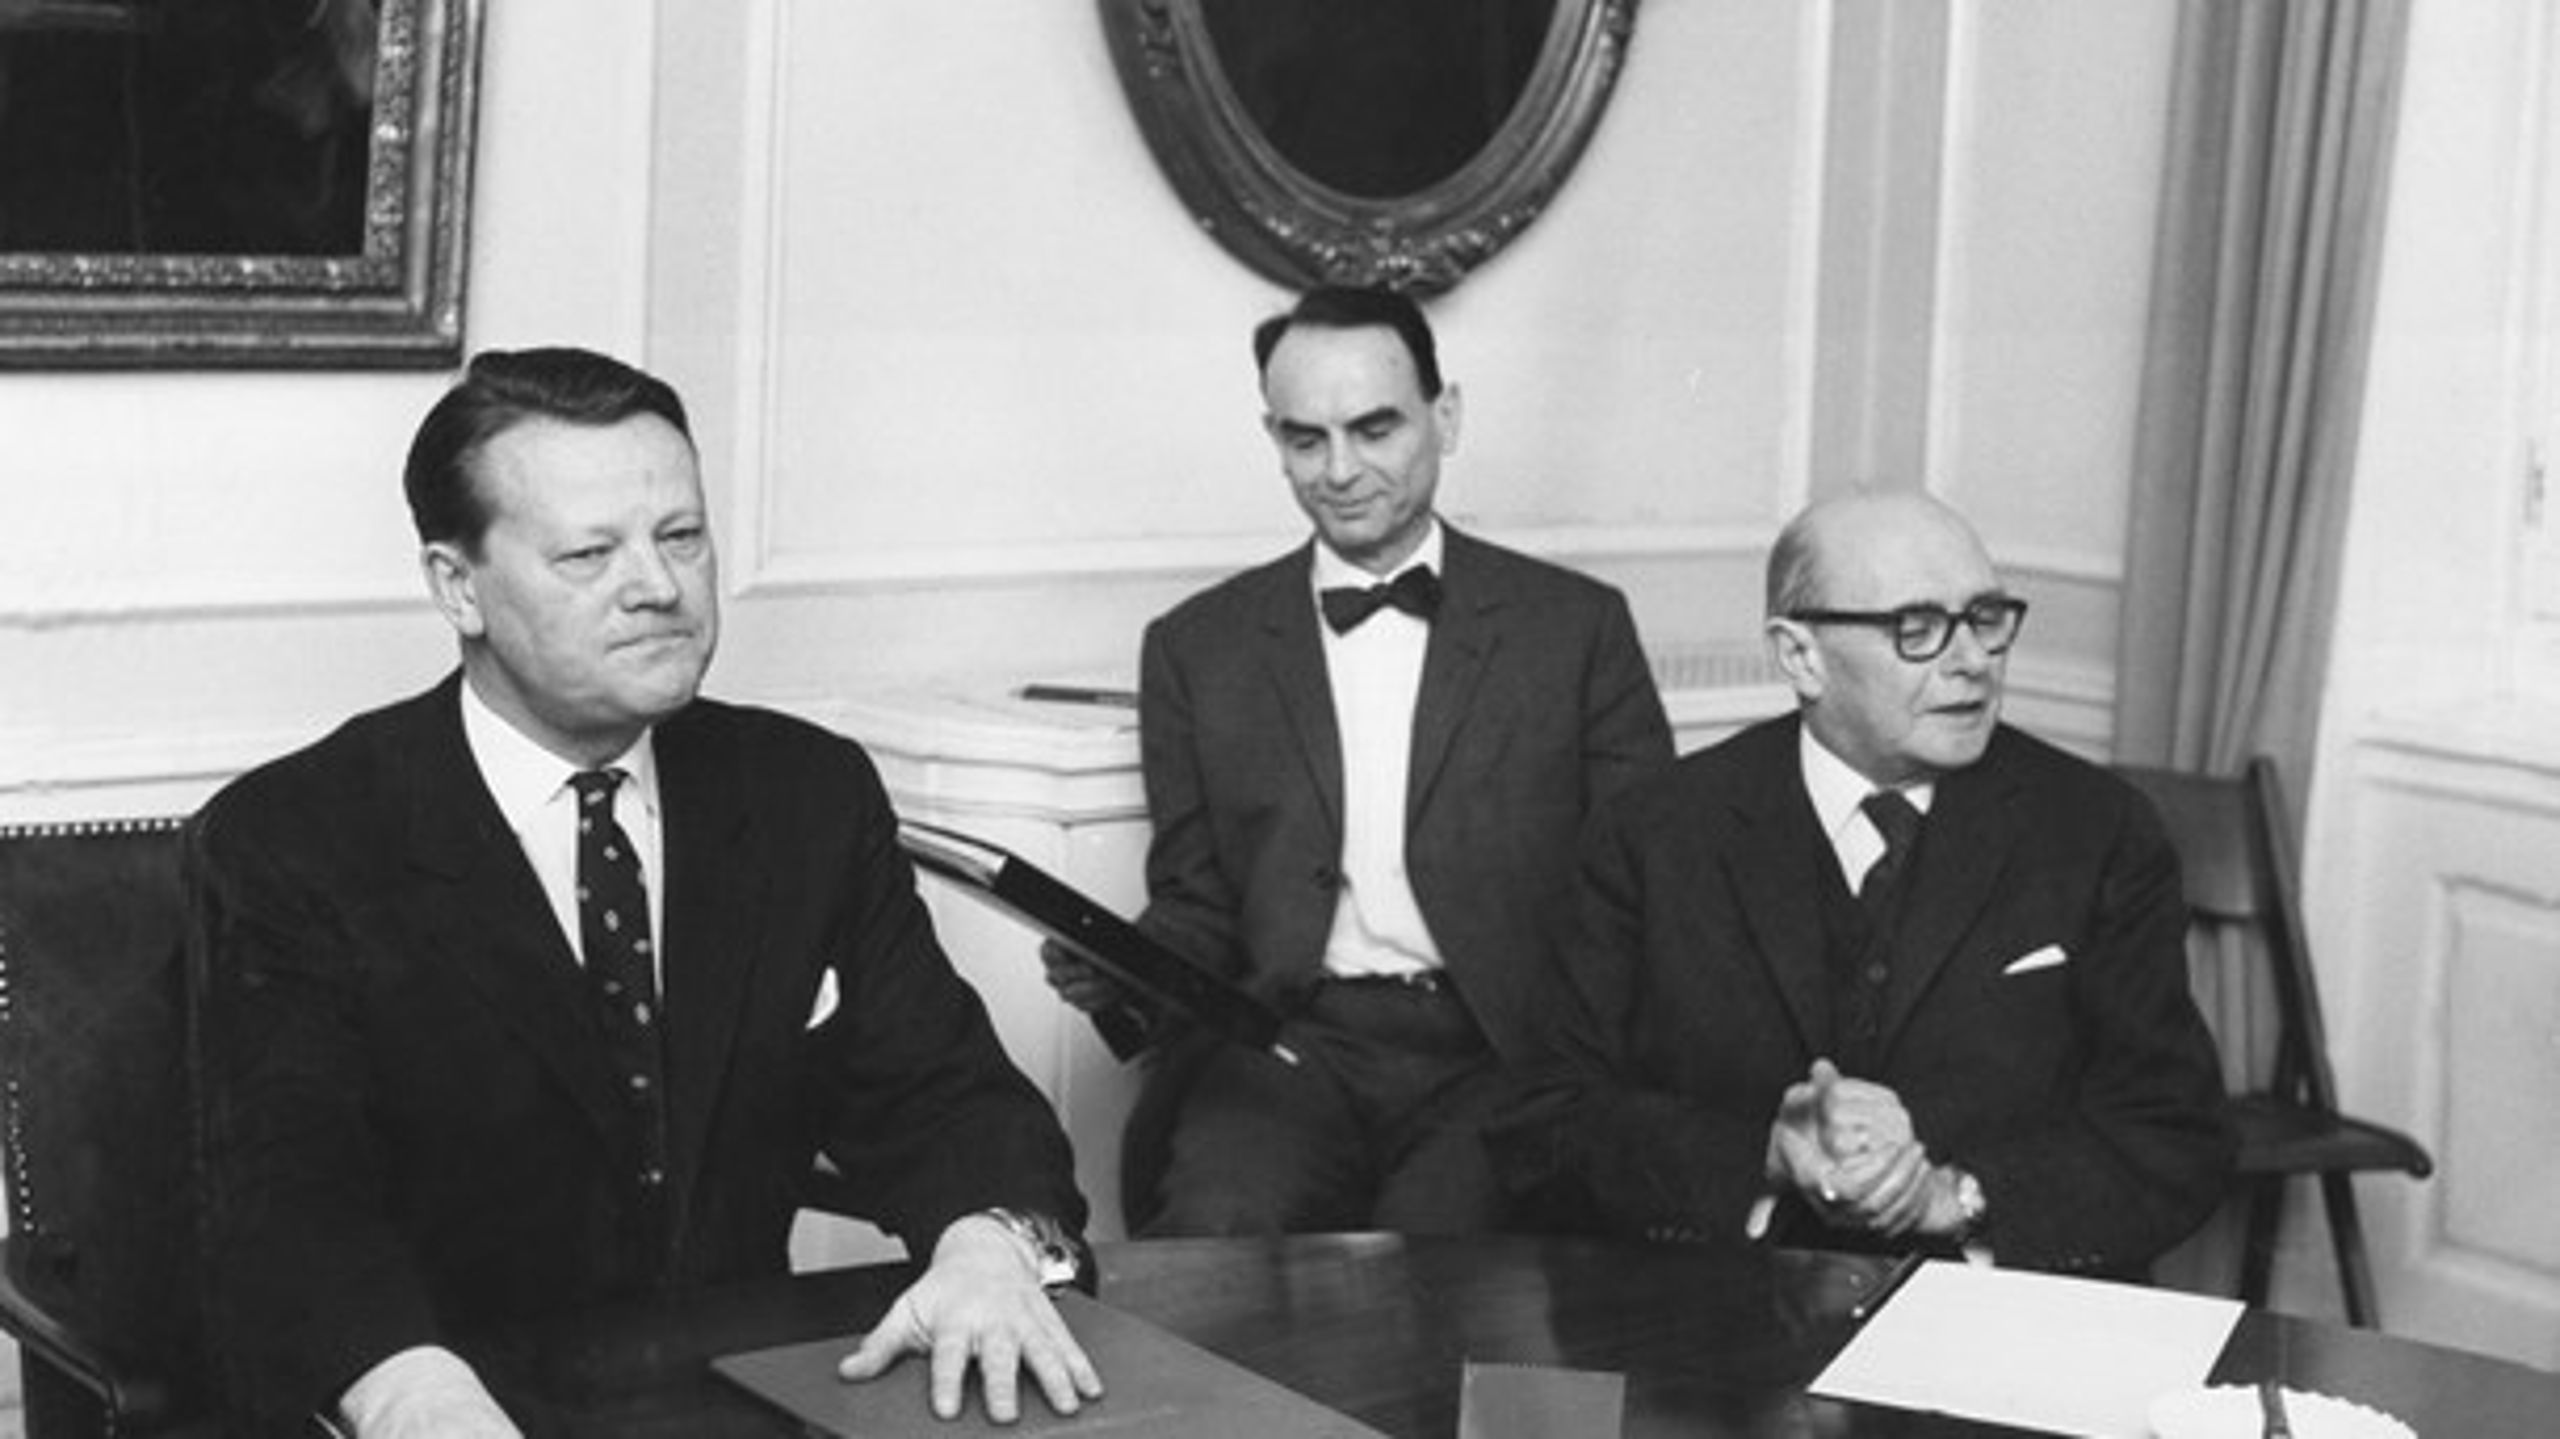 Departementschef Erik Ib Schmidt, som er omgivet af statsminister Jens Otto Krag og overvismand Carl Iversen, reformerede i 1960'erne det statslige bevillingssystem.